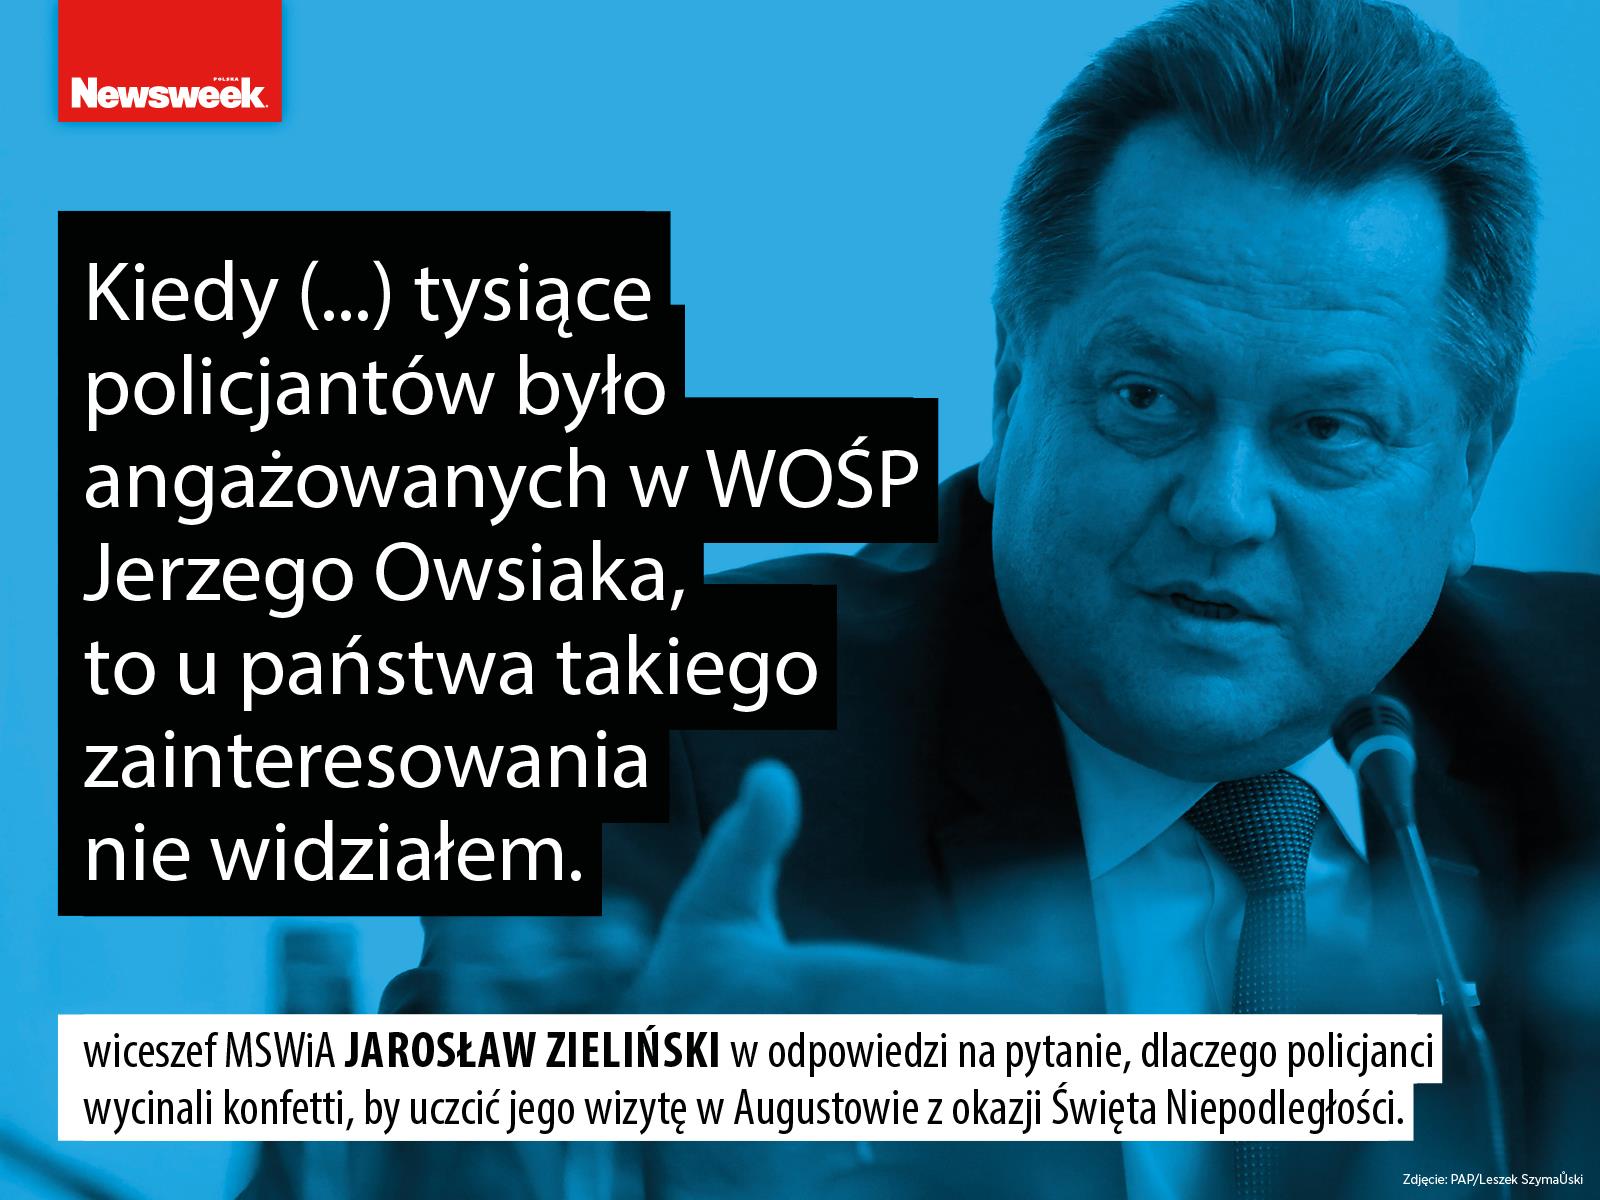 Jarosław Zieliński WOŚP policja polityka Prawo i Sprawiedliwość PiS